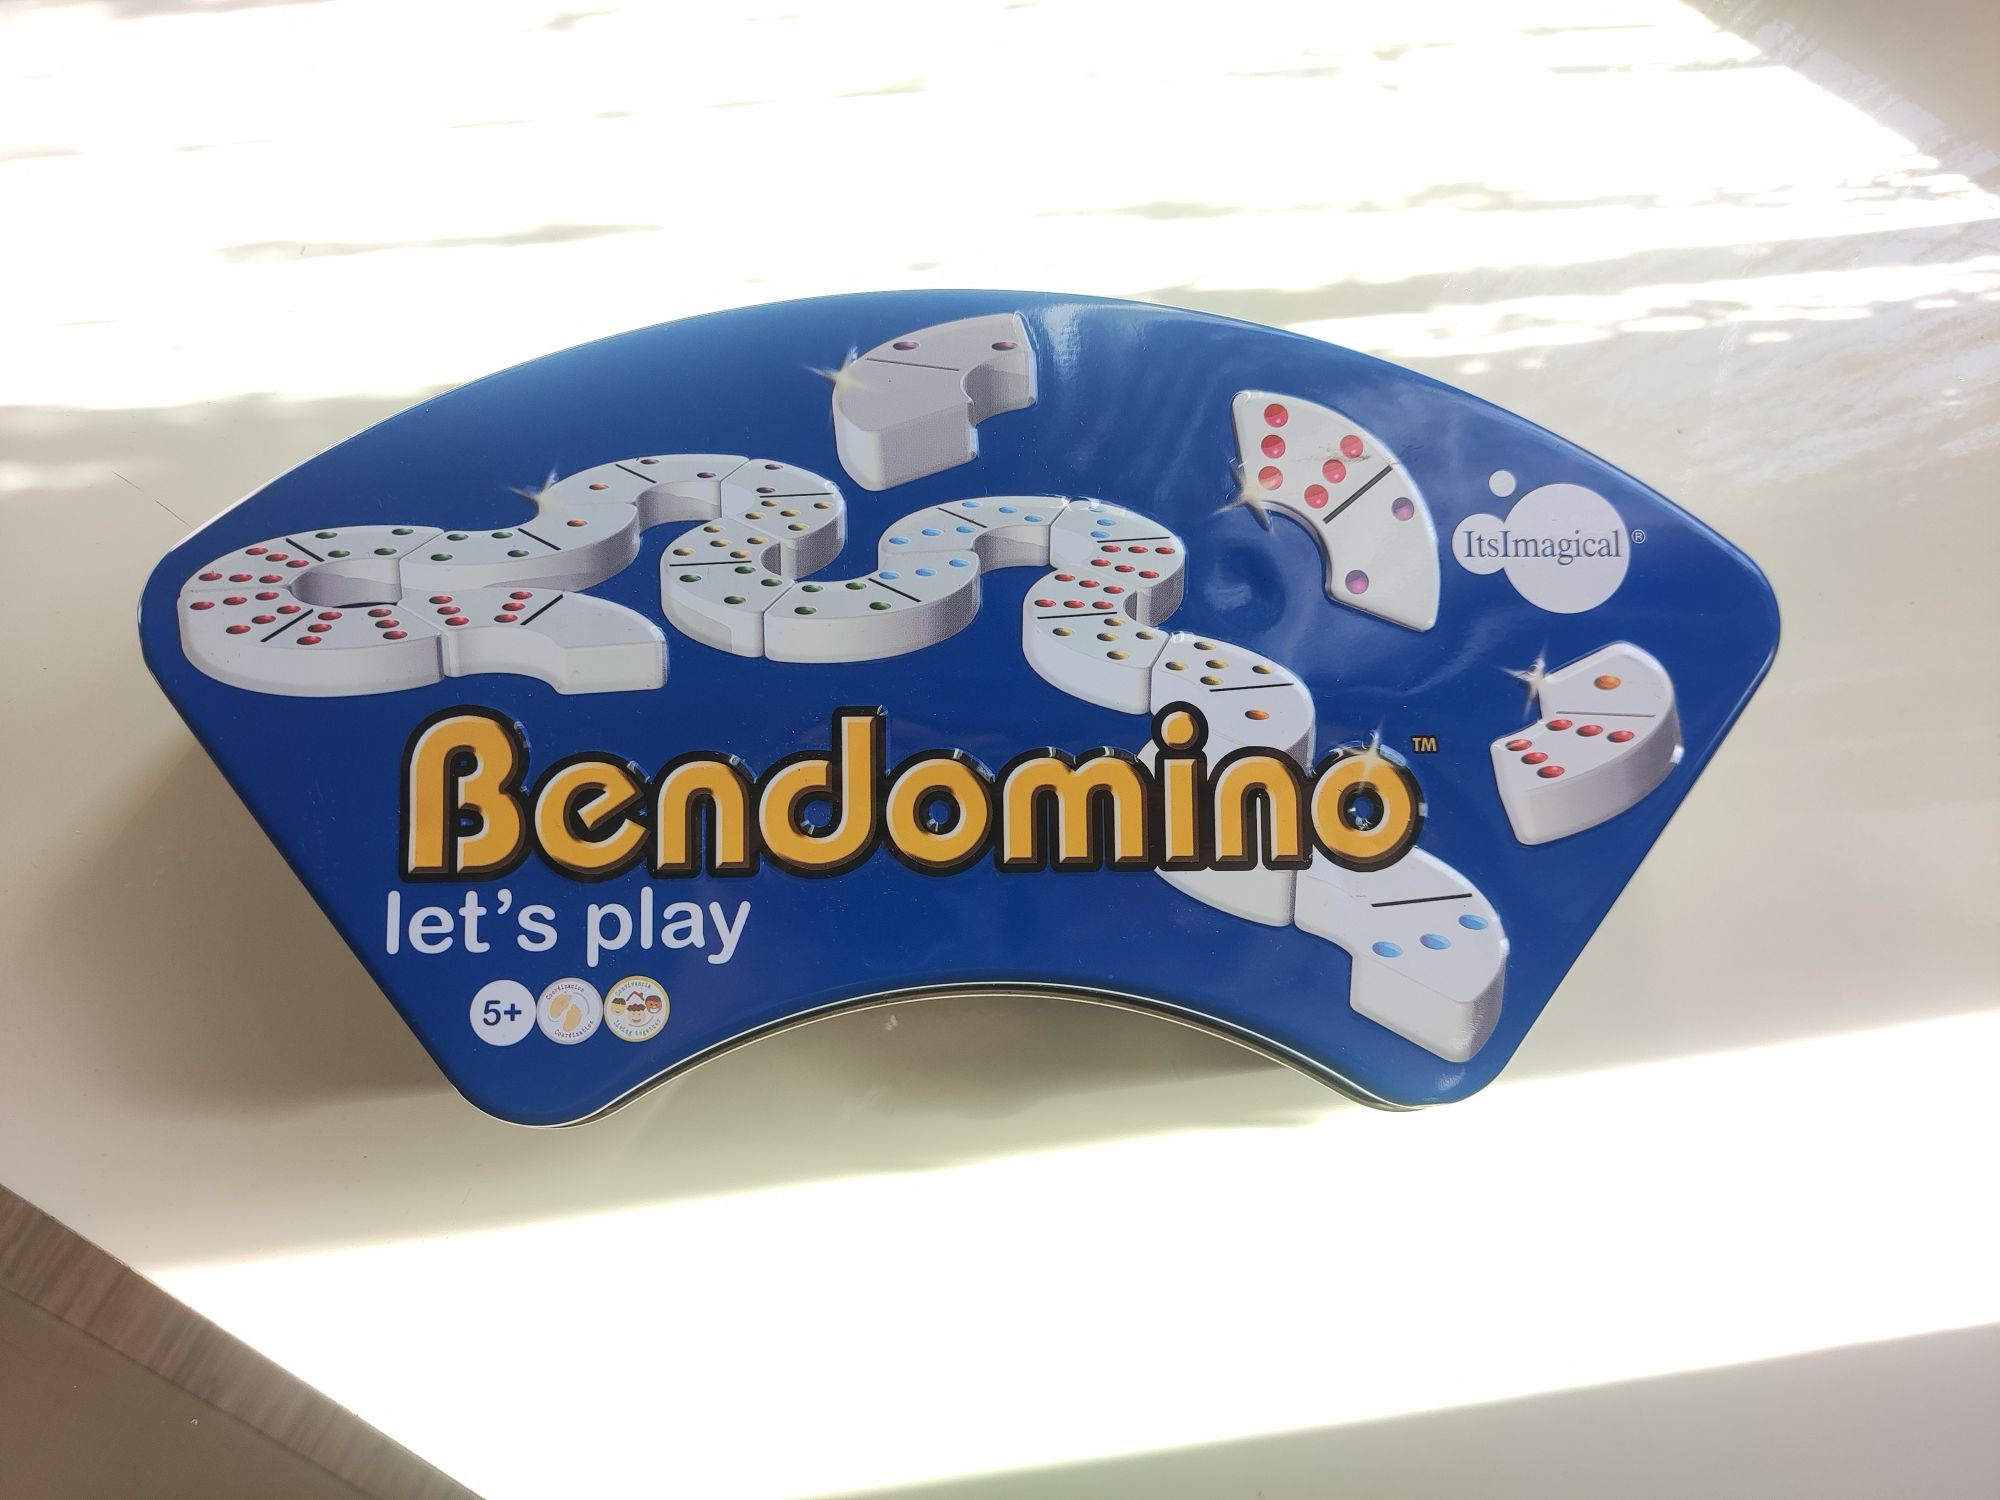 Криво домино - Bendomino (много запазено)